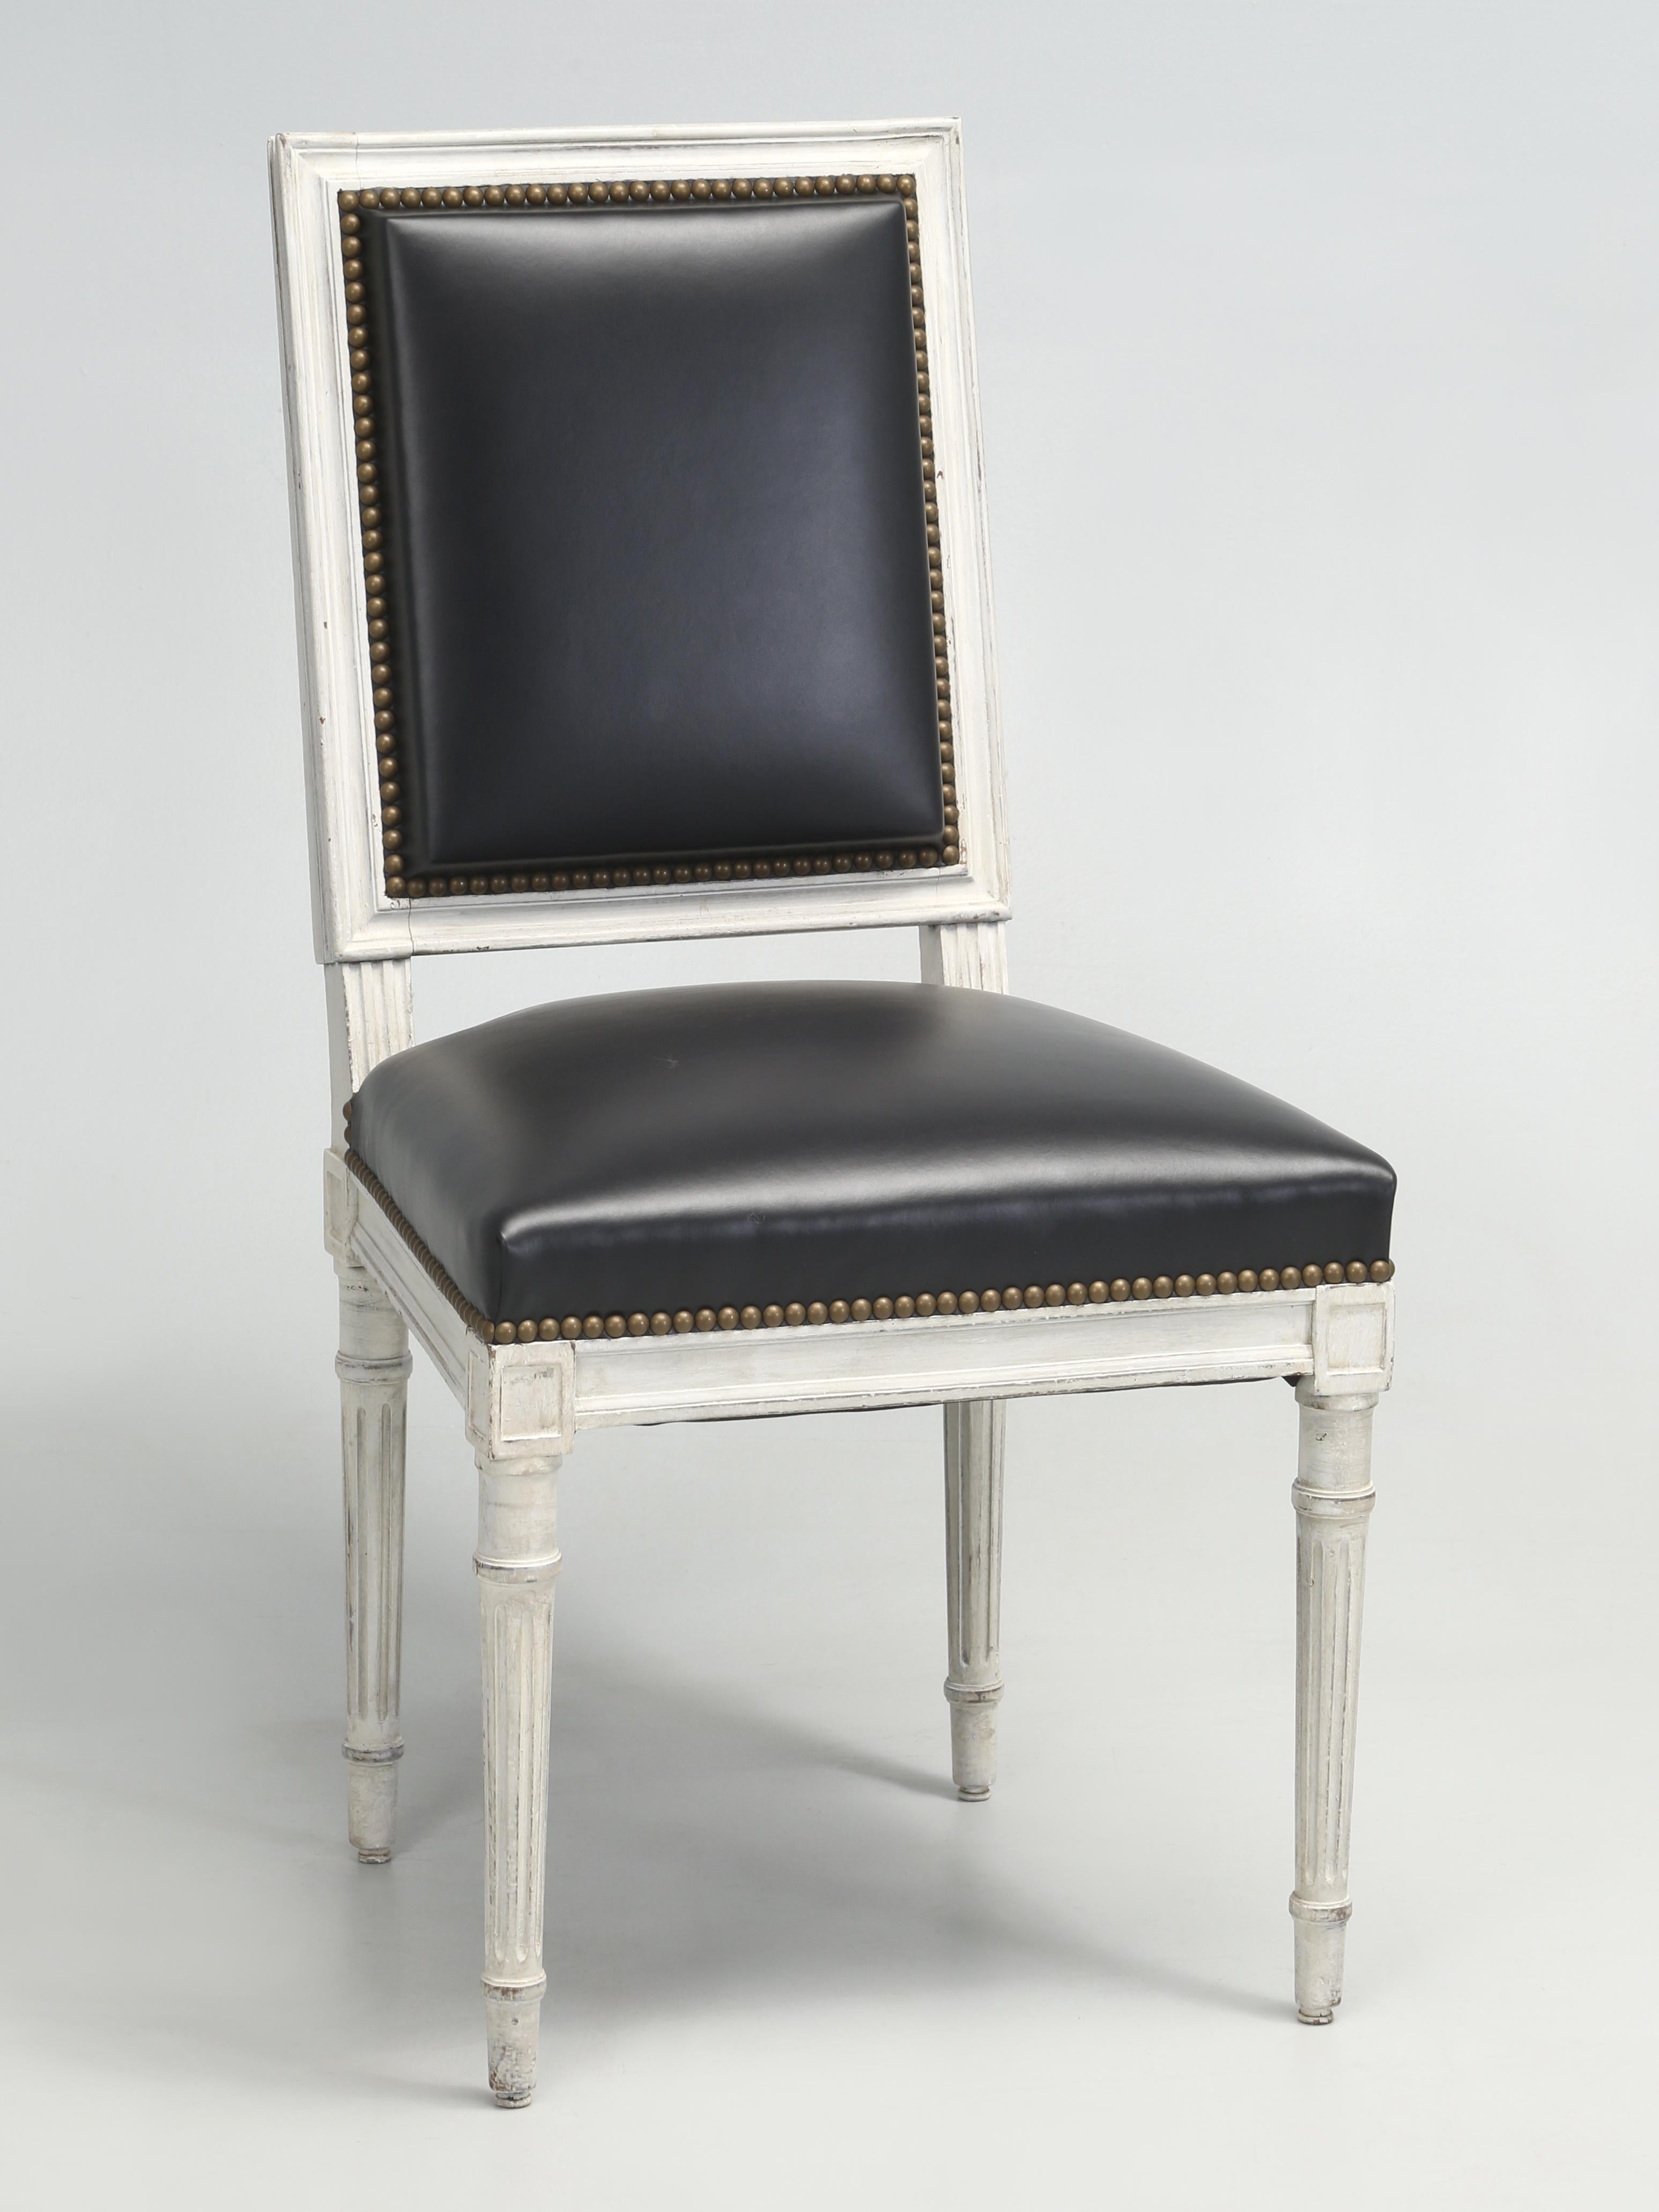 Französische Louis XVI-Esszimmerstühle, die unsere hauseigene Polsterei und Restaurierungsabteilung vom nackten Holzrahmen aufwärts restauriert hat. Alles wurde nach alter Schule gemacht, mit Rosshaar und zerkleinerten Kokosfasern für die